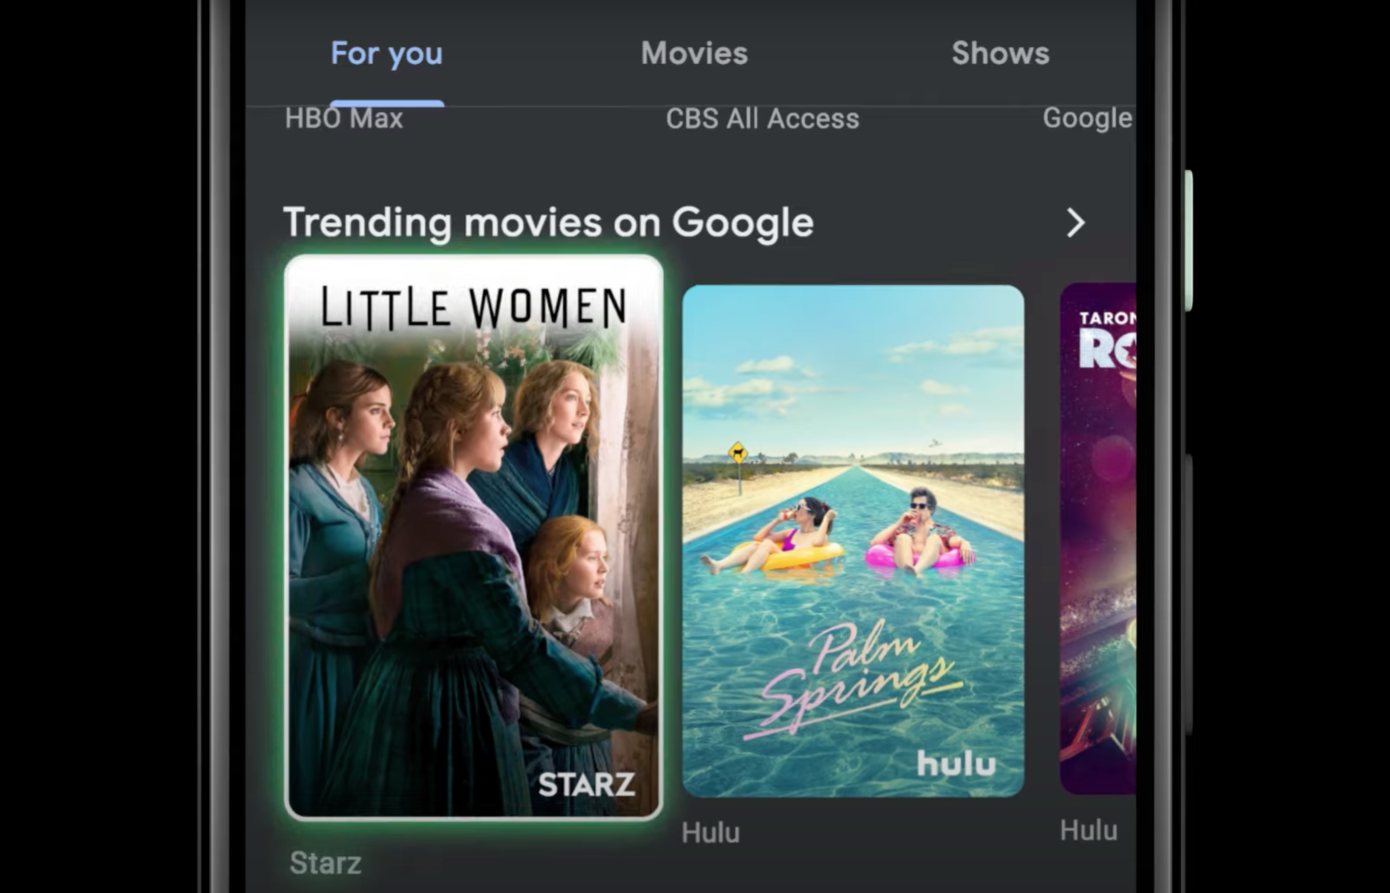 La aplicación Android de Google TV tiene una nueva interfaz